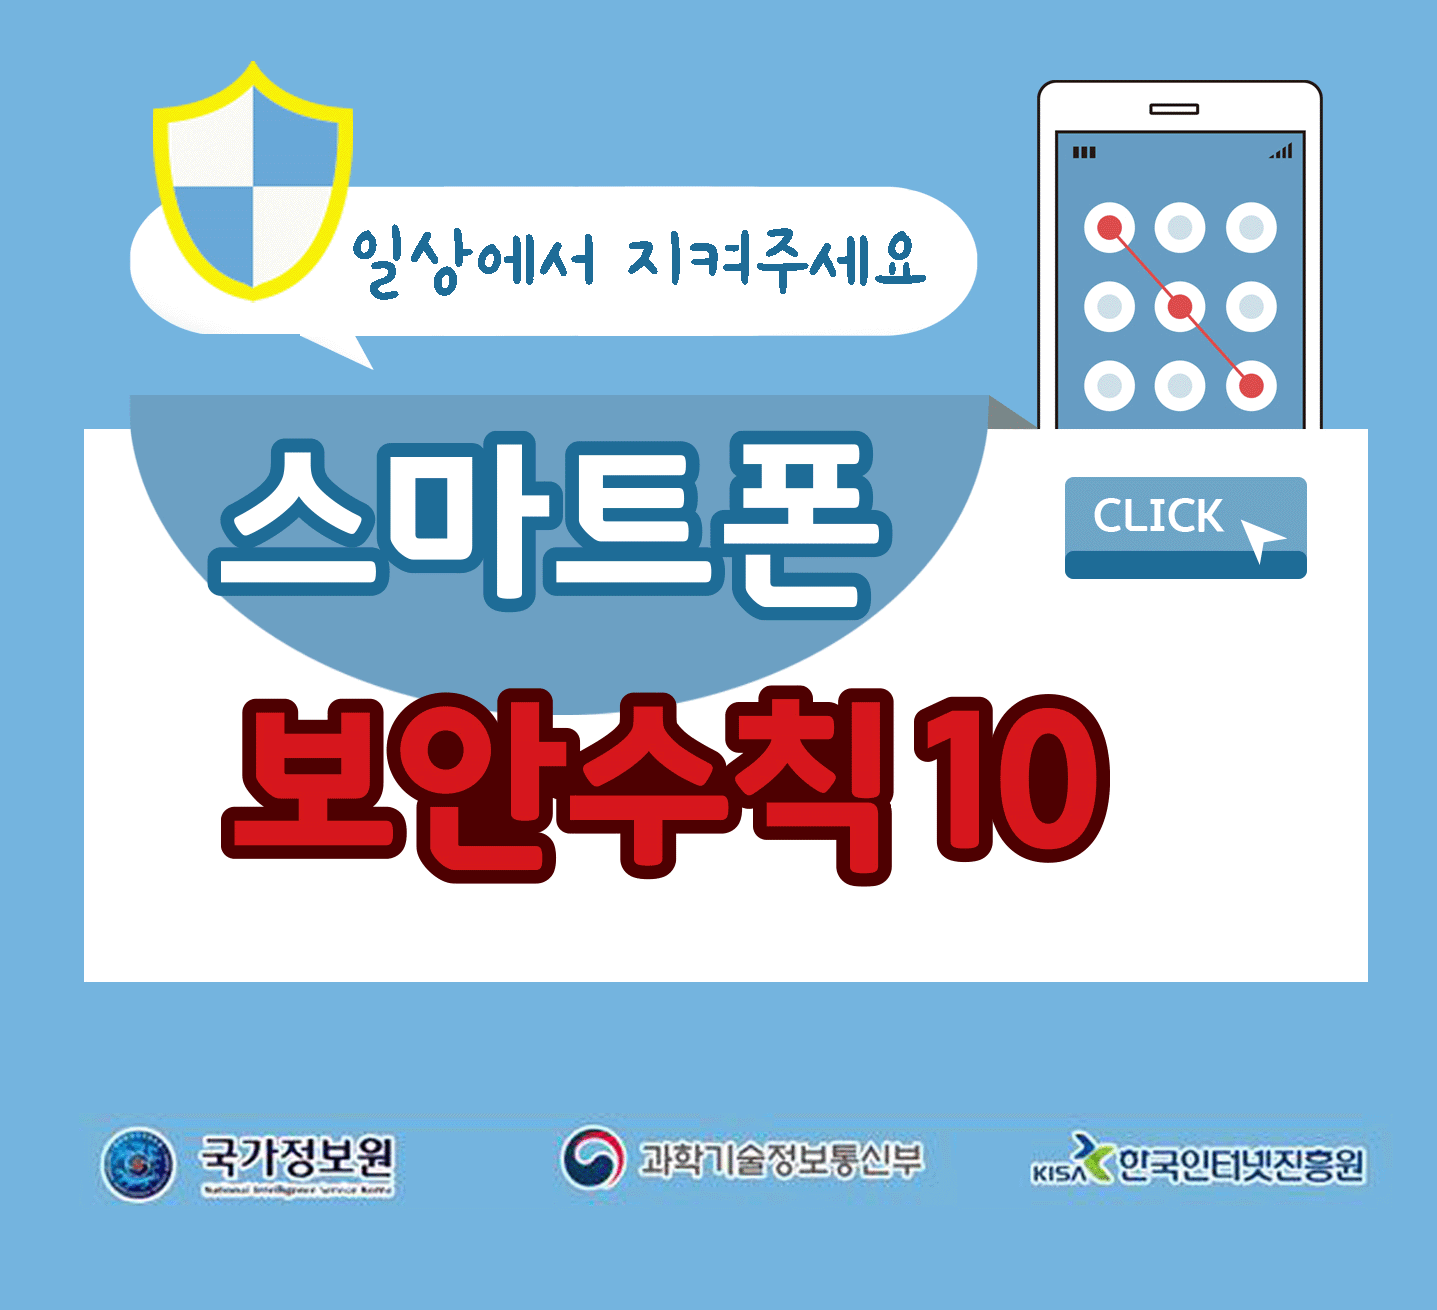 일상에서 지켜주세요
스마트폰 보안수칙 10 CLICK
국가정보원, 과학기술정보통신부, 한국인터넷진흥원;jsessionid=8C4889FF1D80E6B3B742A0F46BC26DCC